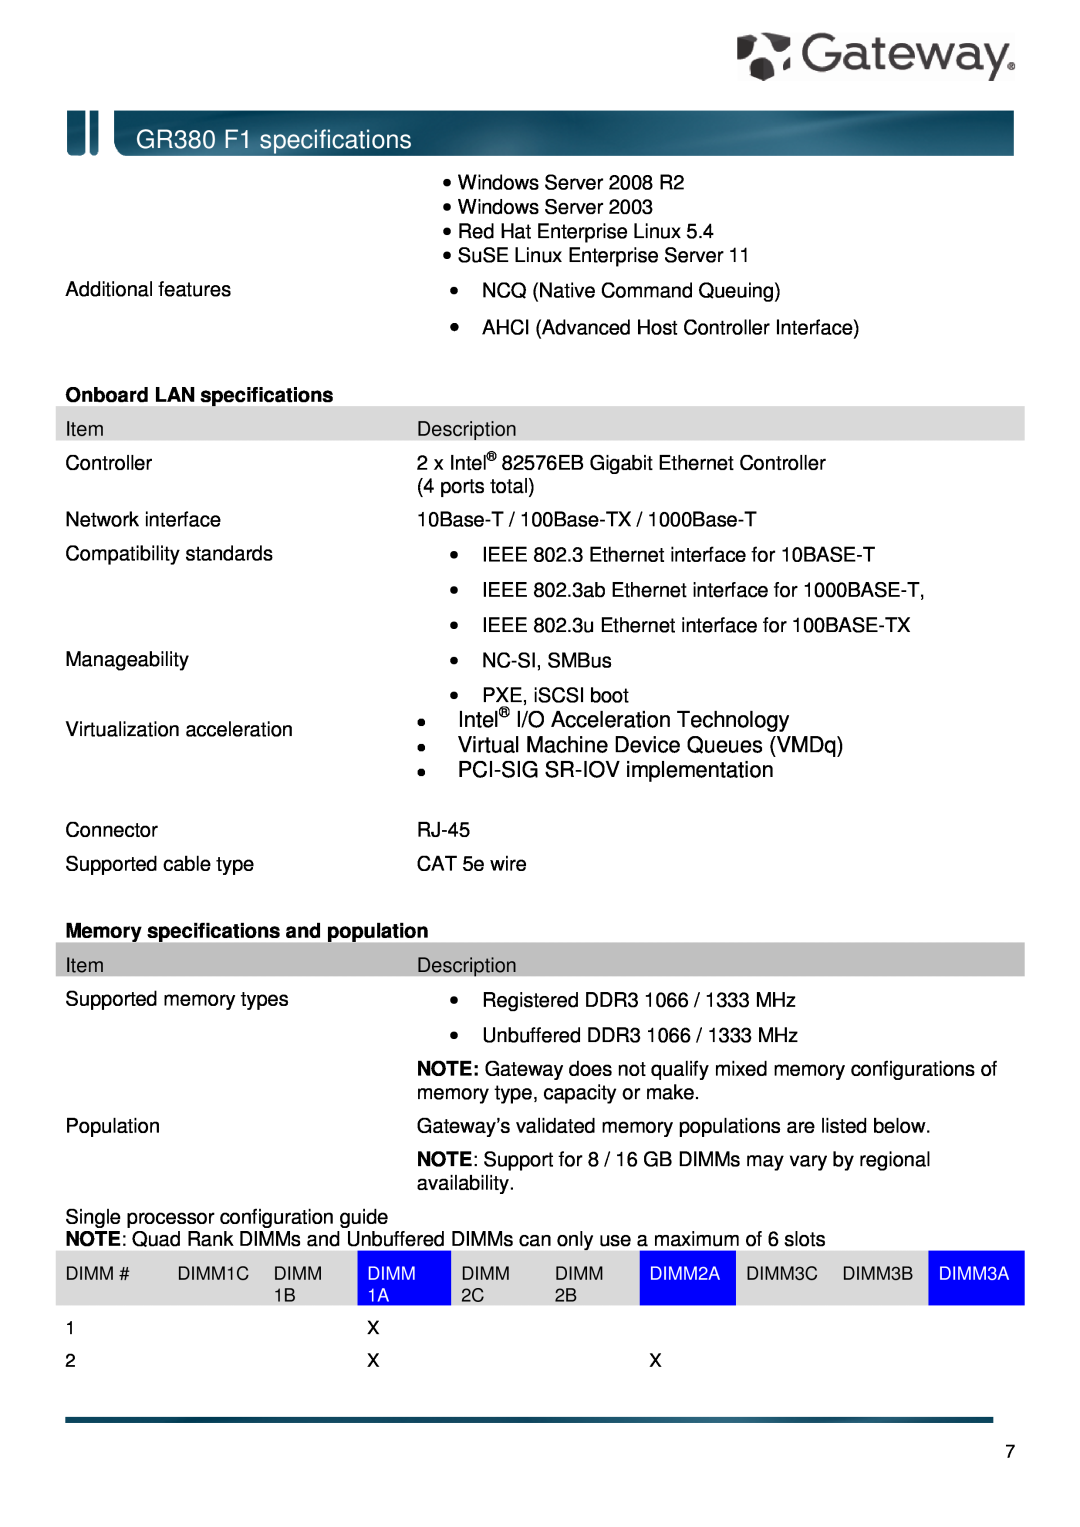 Gateway Onboard LAN specifications, Memory specifications and population, GR380 F1 specifications 